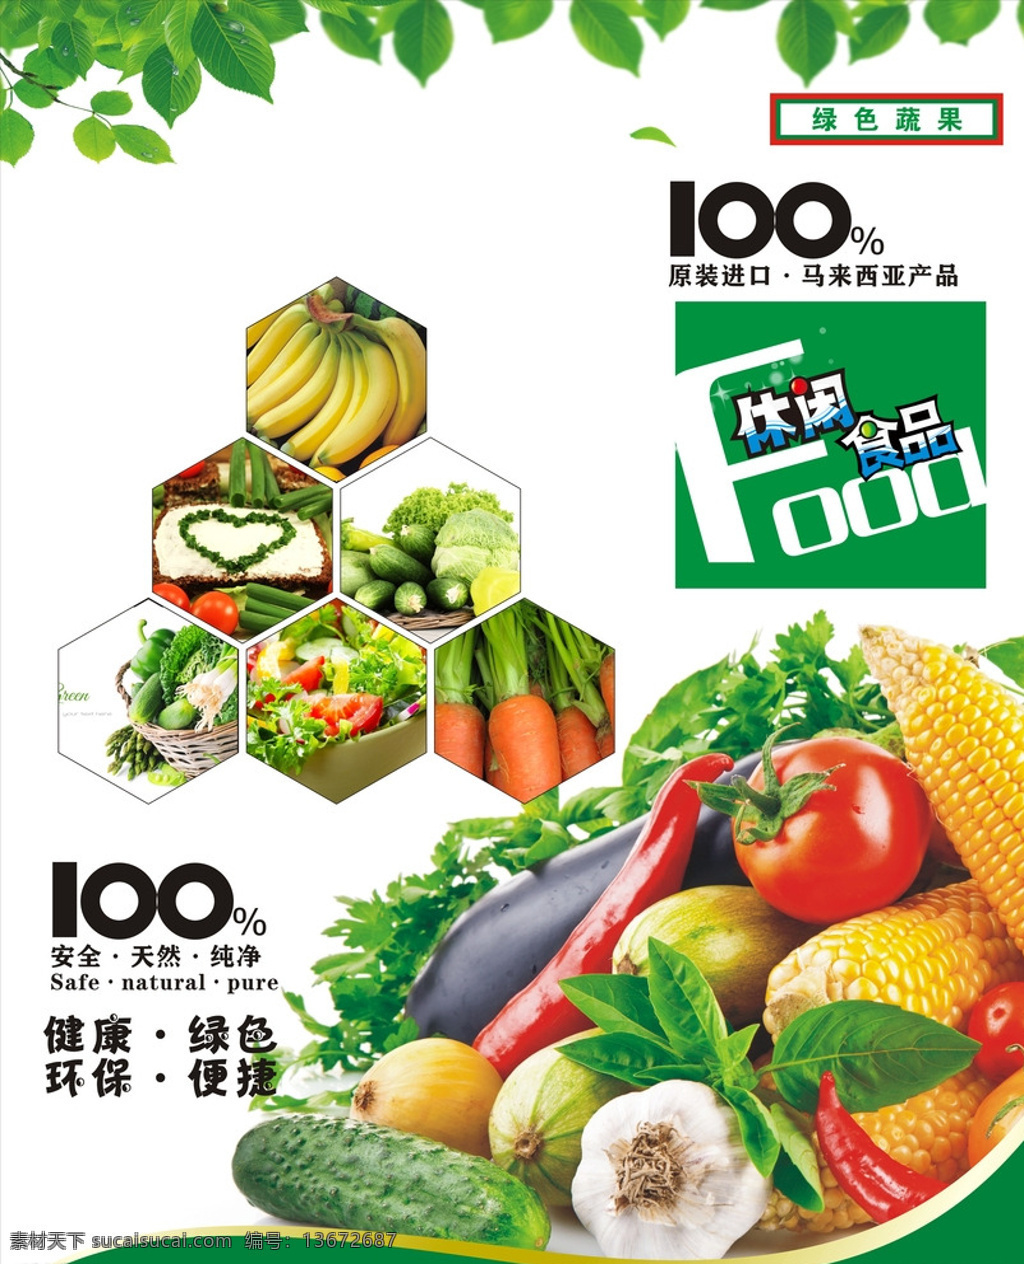 有机蔬菜 绿色食品 蔬菜 蔬菜海报 食品 健康食品传单 绿色食品海报 有机蔬菜海报 宣传单 绿色 水果蔬菜 水果传单 白色